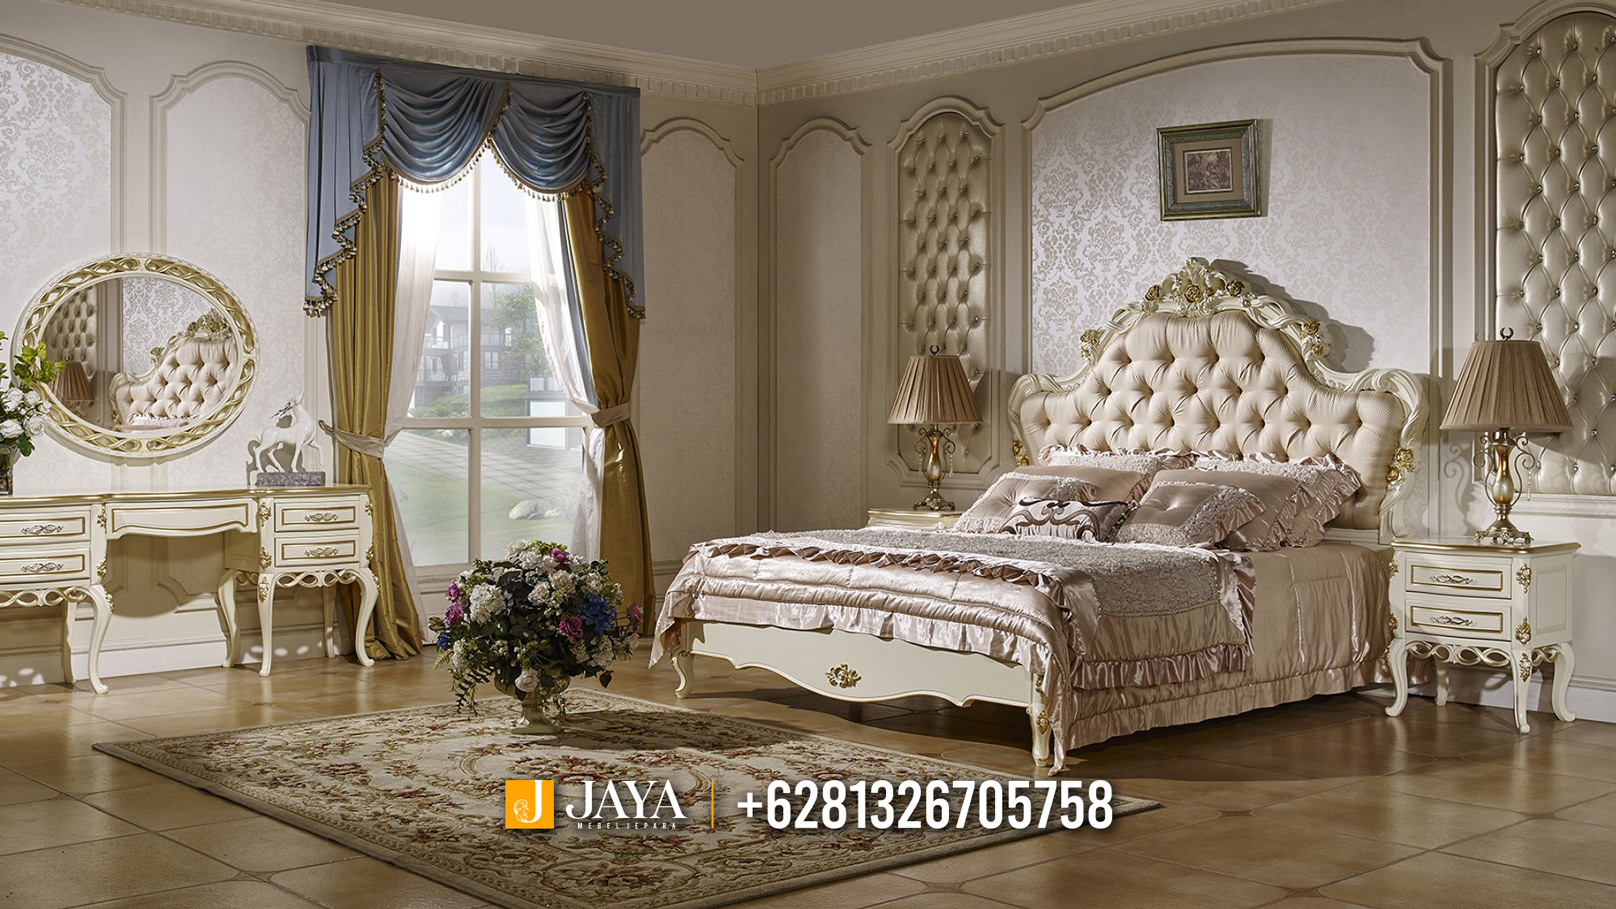 High Quality Furniture Kamar Set Mewah Terbaru Furniture Ukir JM345